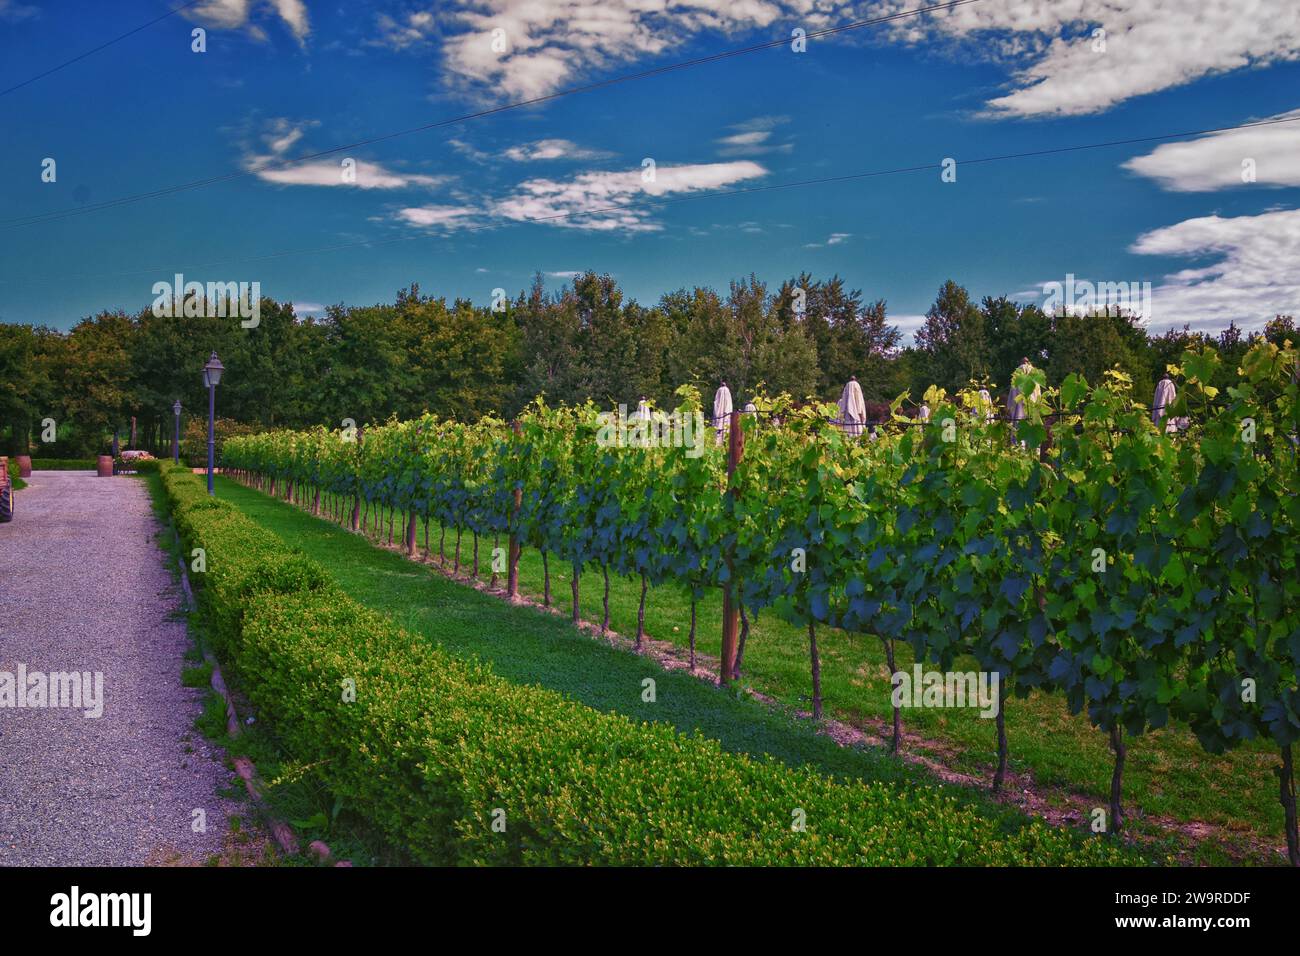 Bodega de viñedos de Toscana finca típica en Italia, Europa. Foto de stock